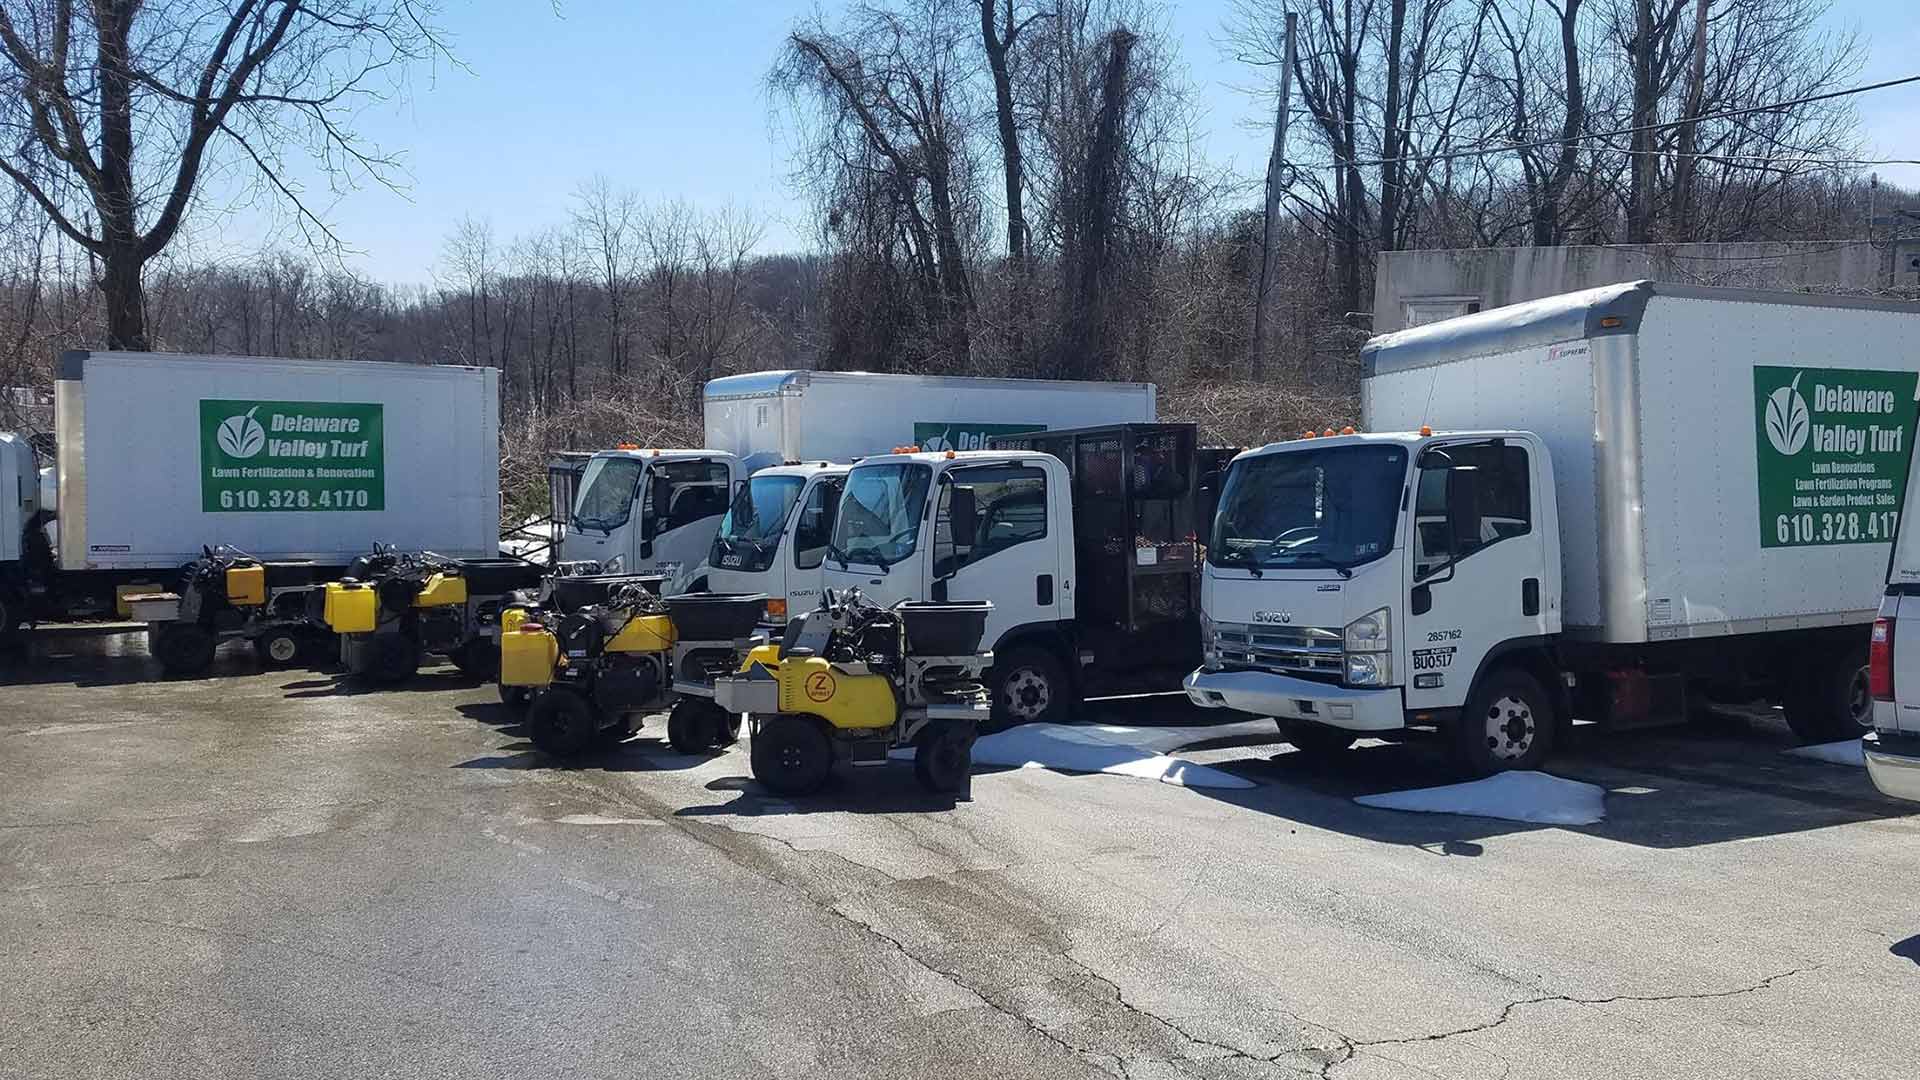 Work trucks placed in Bryn Mawr, PA.